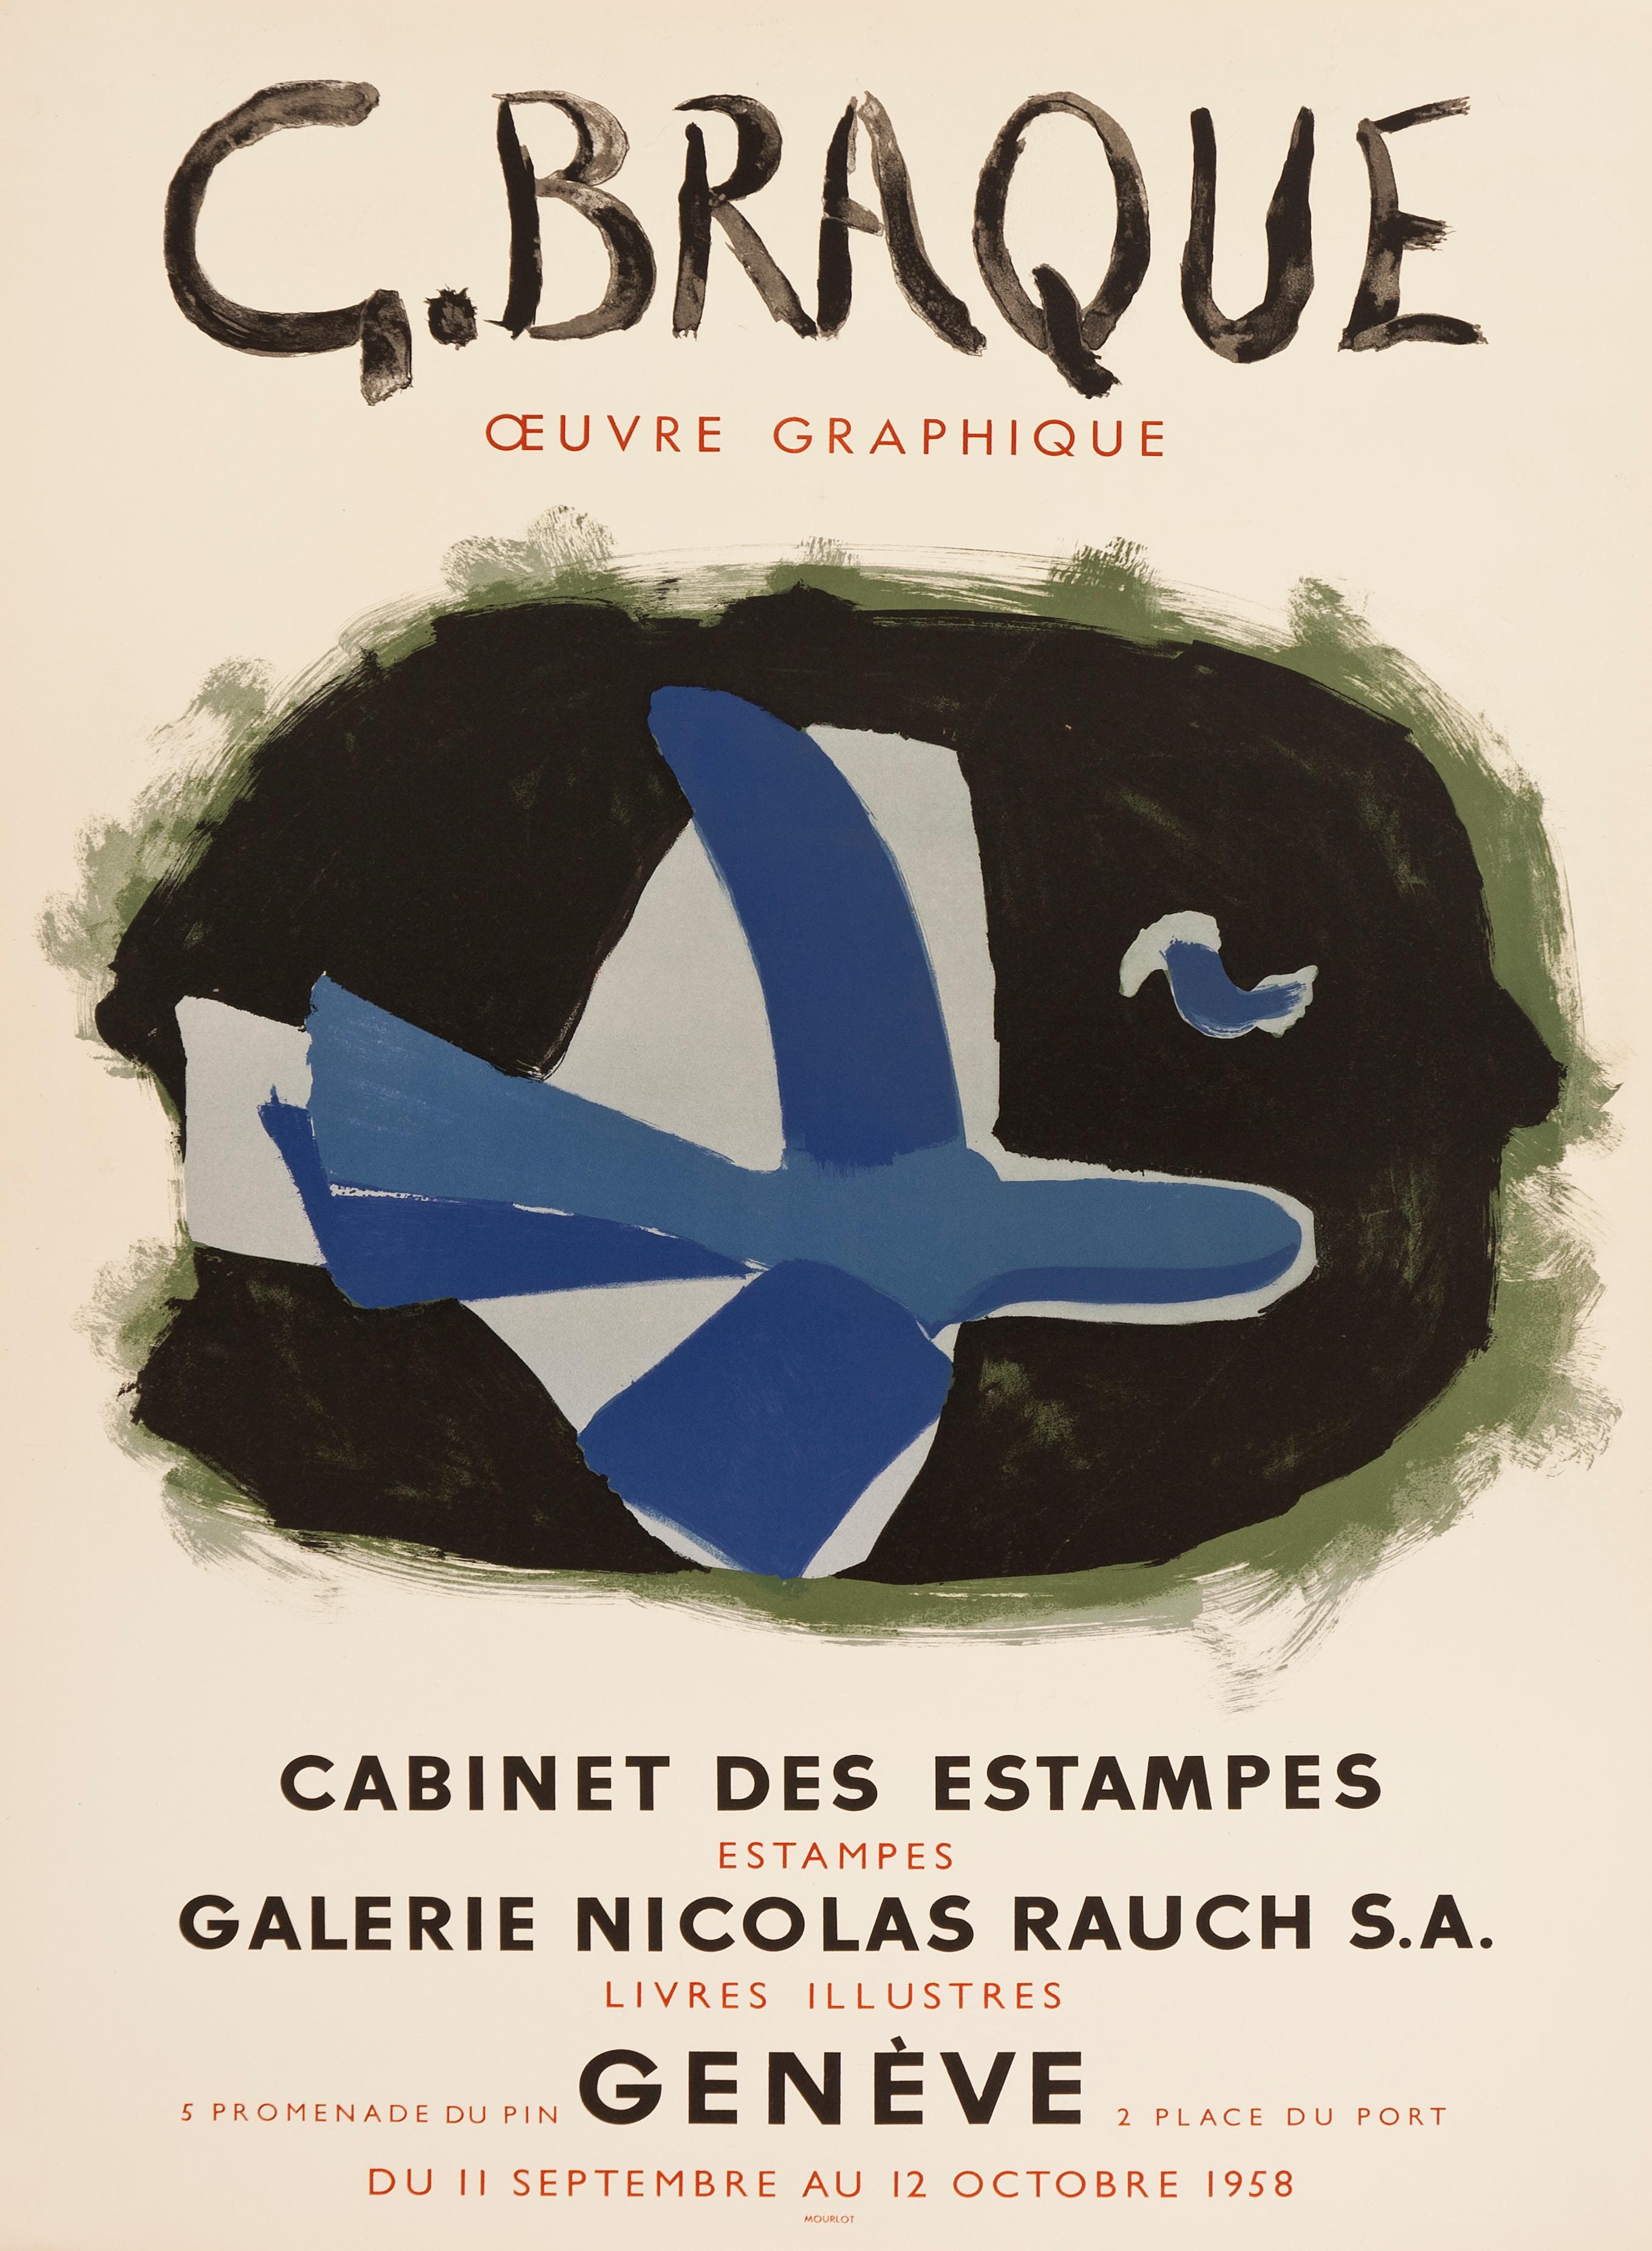 Cette affiche lithographique originale en 6 couleurs a été conçue par Georges Braque pour une exposition d'estampes et de livres illustrés à la Galerie Nicolas Rauch à Genève, en Suisse, en 1958.

Les images sur le thème des oiseaux, avec une